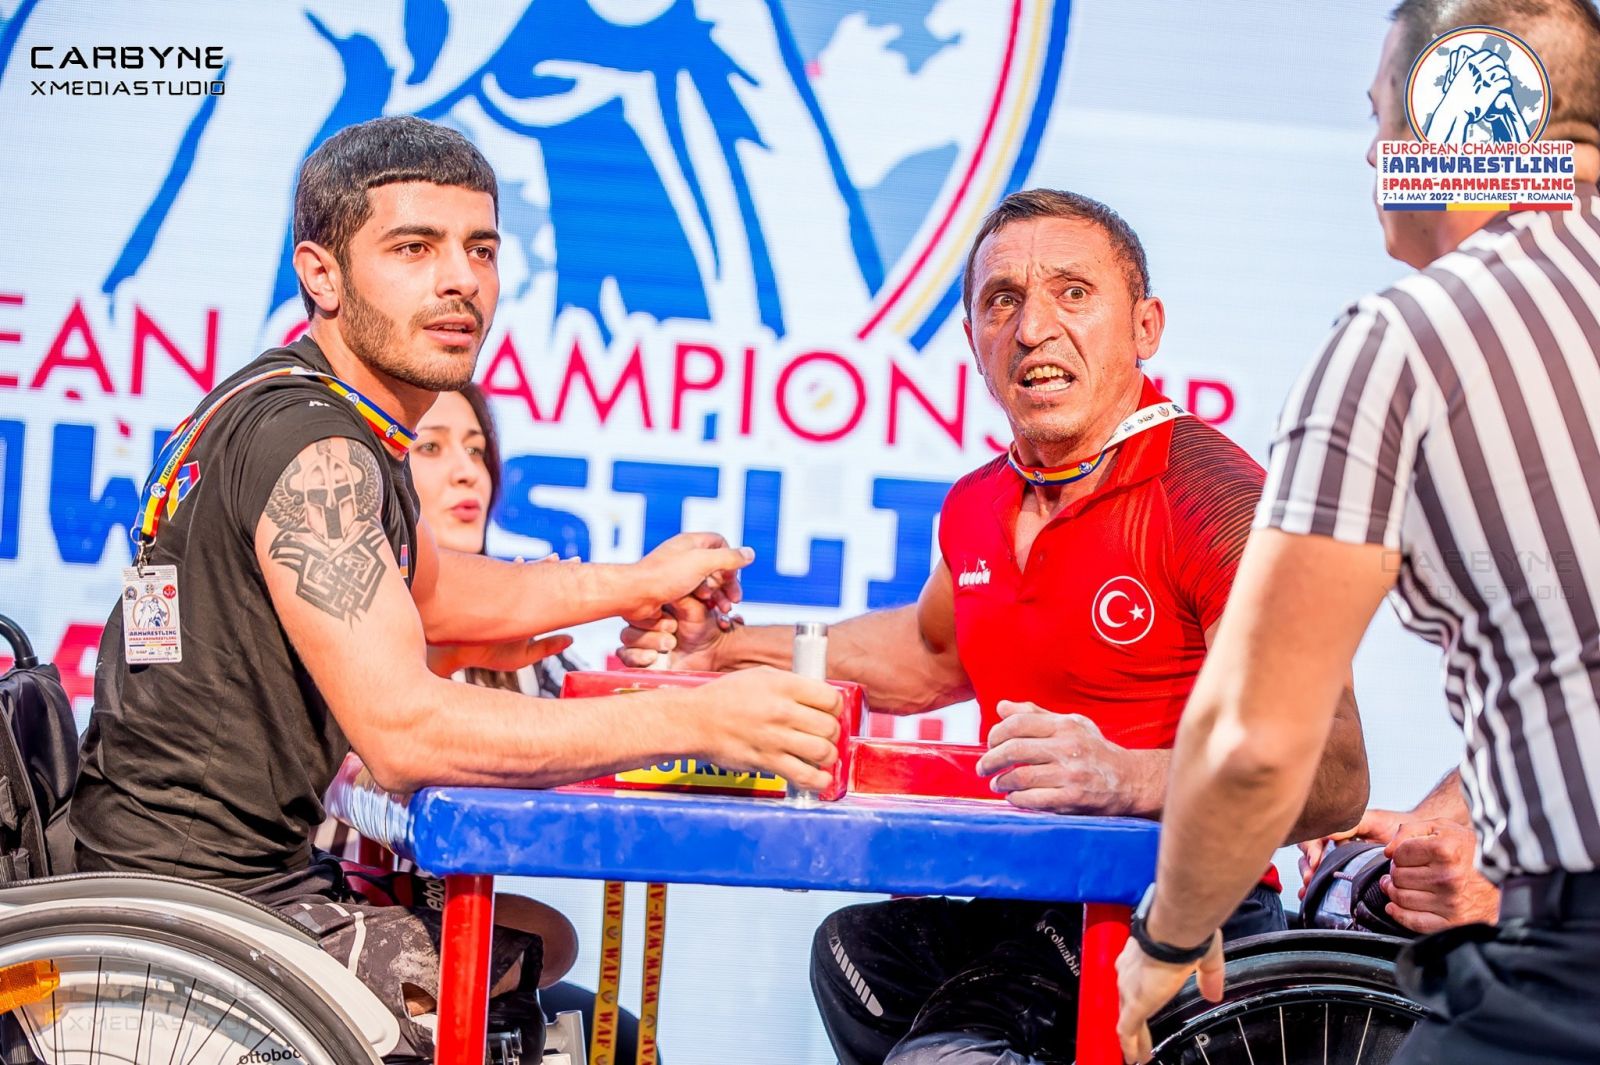 Savaşta iki bacağını kaybeden Karabağlı Sargis Harutyunyan, Türk sporcuyu yine mağlup etti (Video)